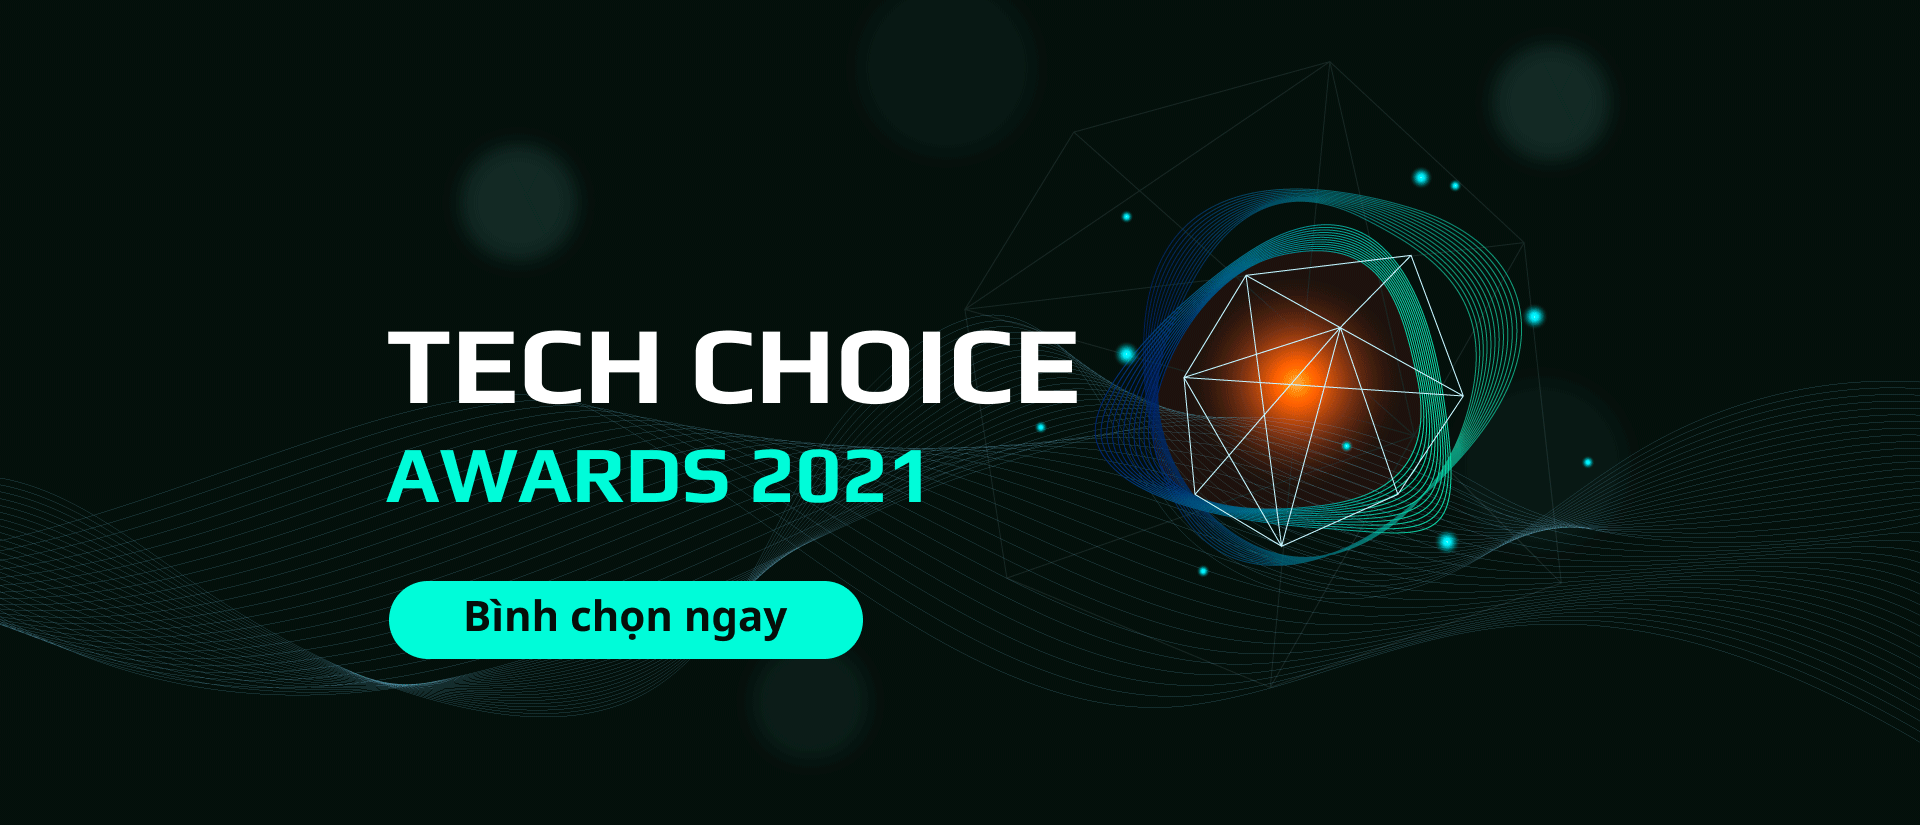 Chính thức khởi động cuộc thi Tech Choice Awards 2021